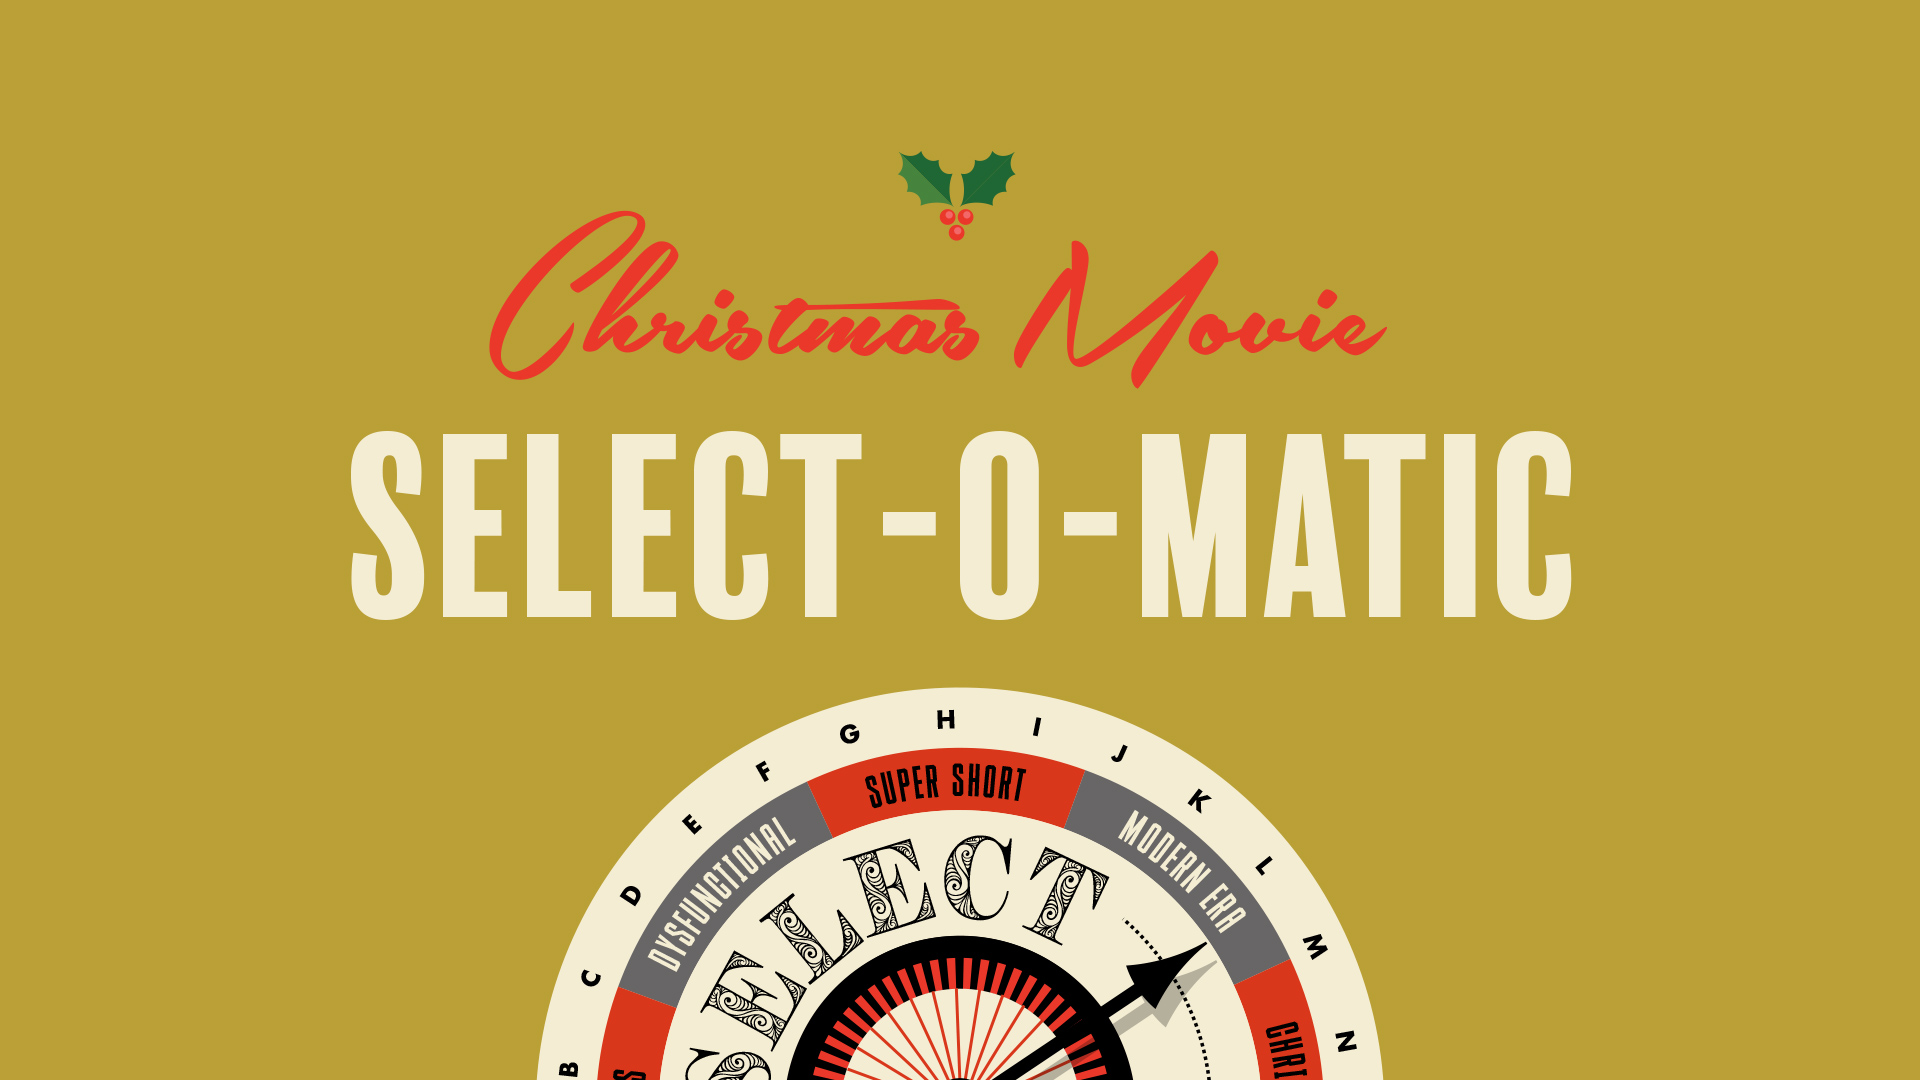 Christmas Movie Select-O-Matic